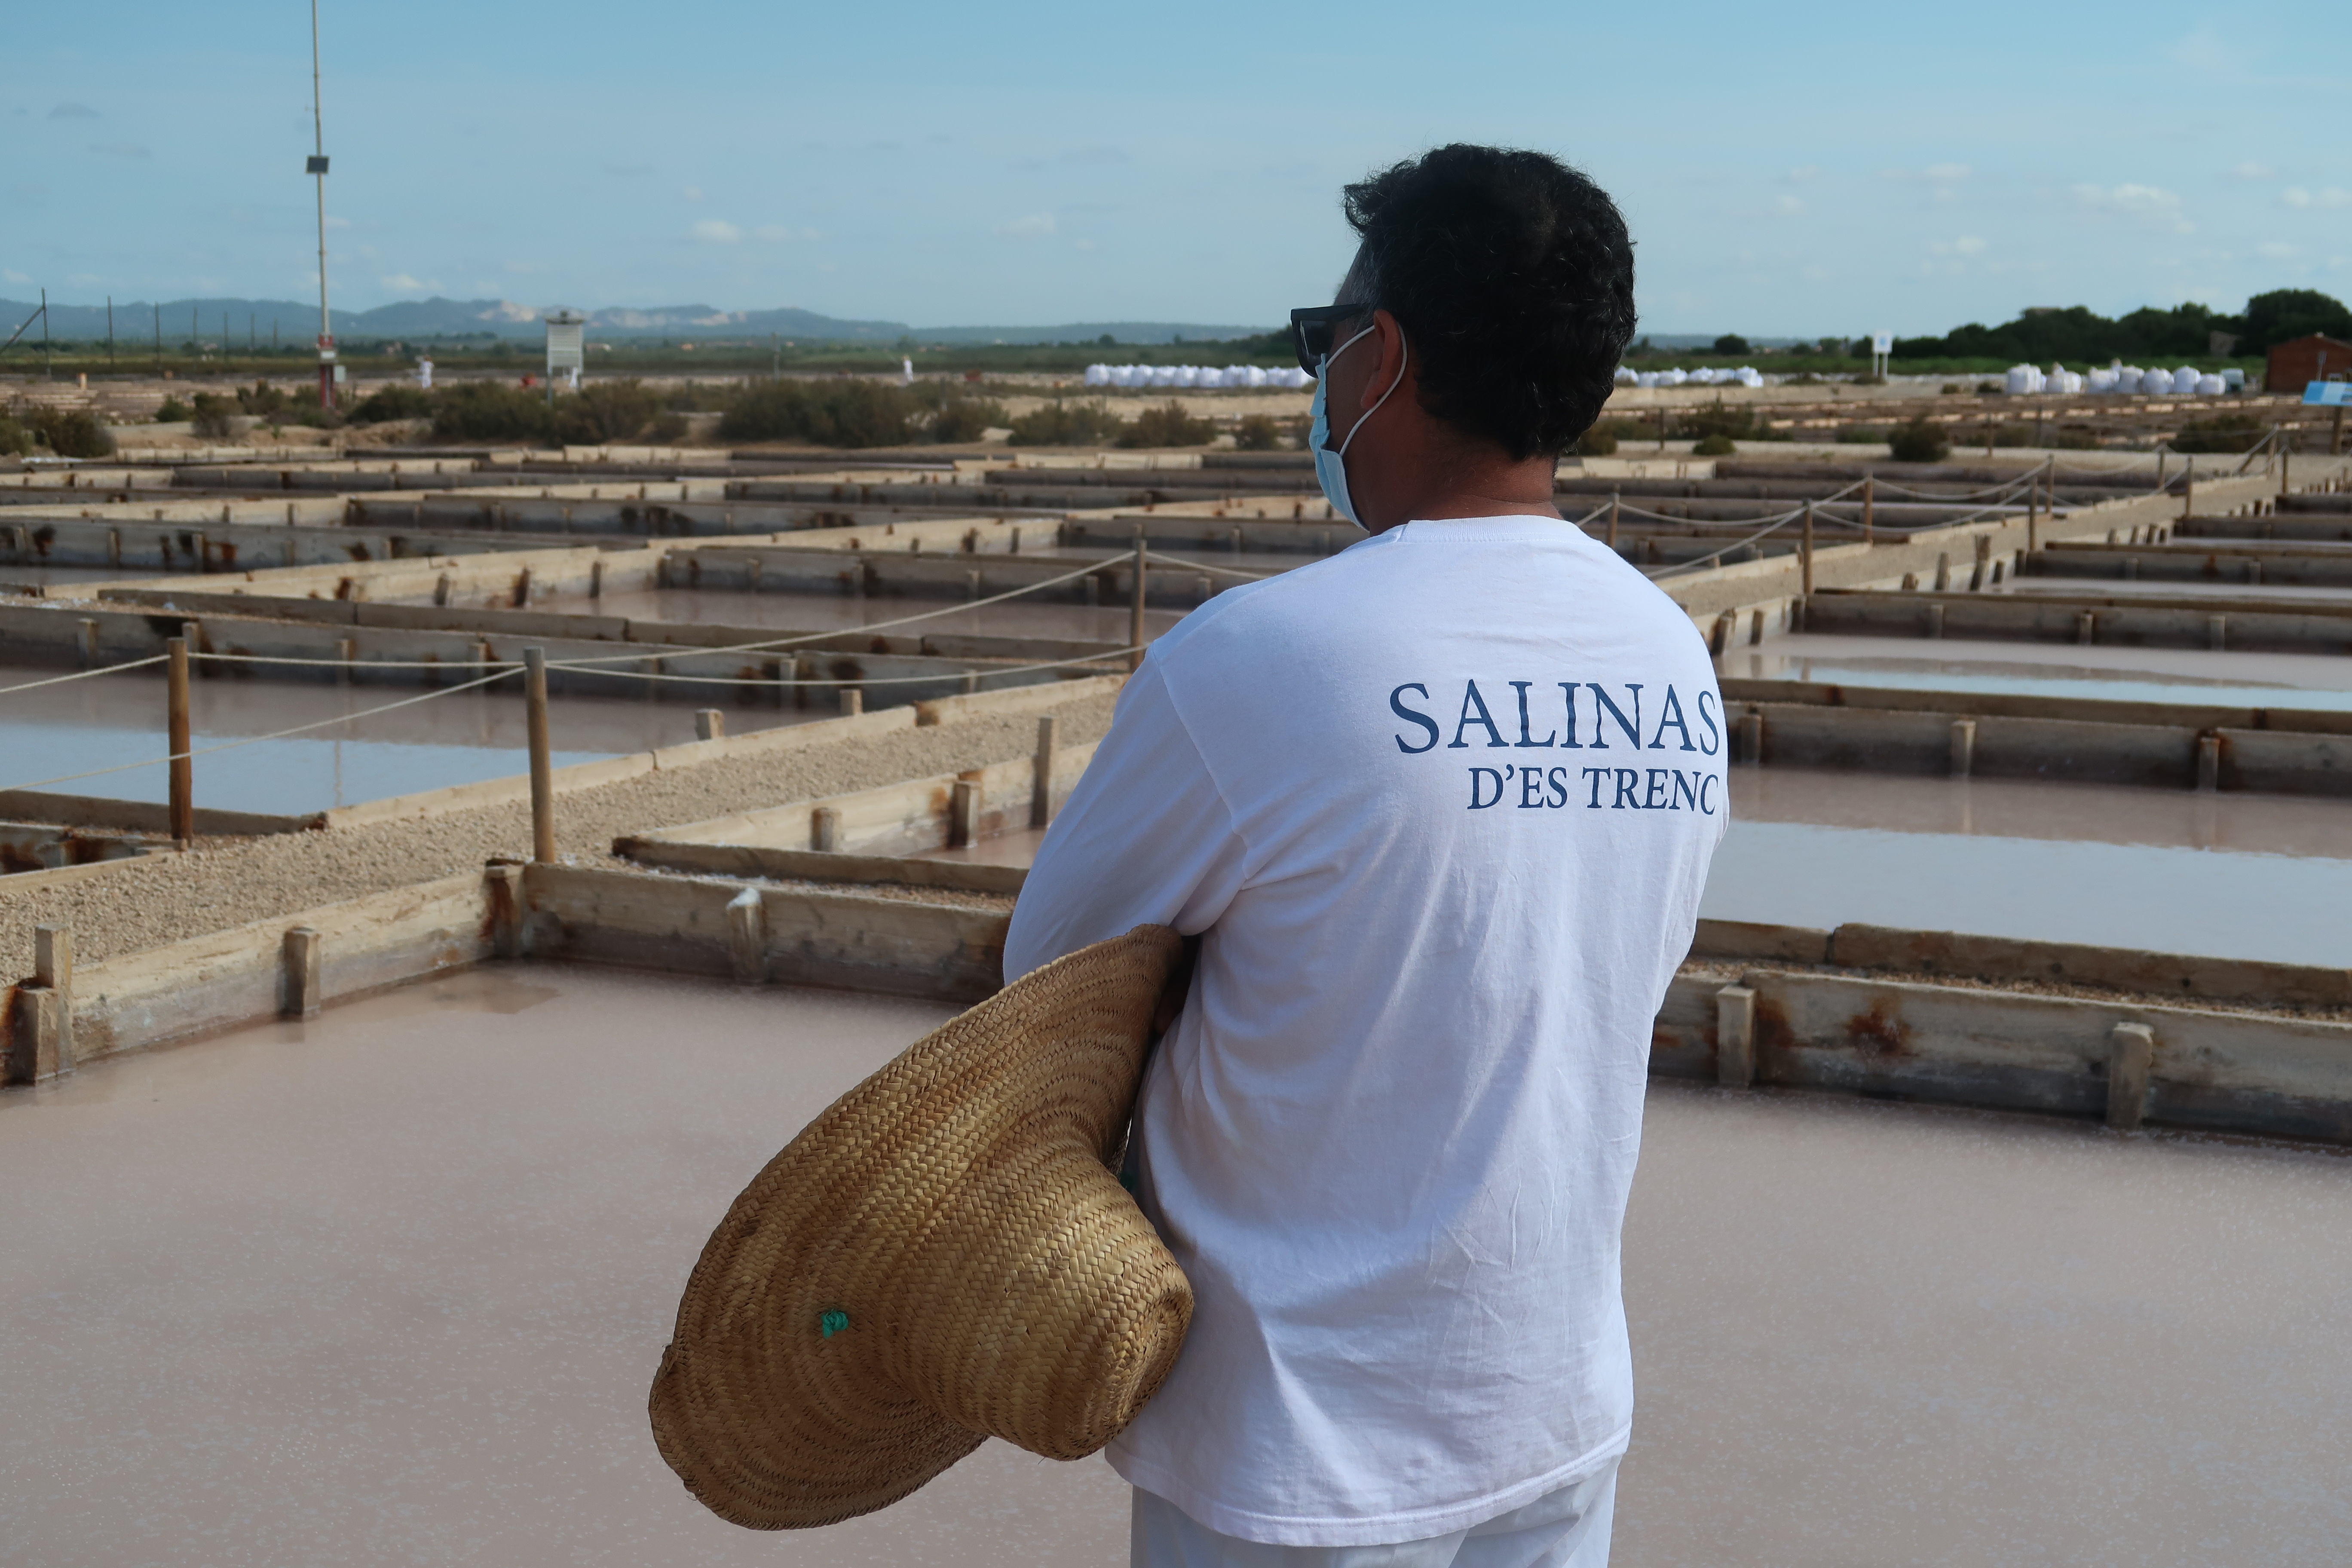 El Consell de Mallorca ha trabajo intensamente para que los profesionales salineros y sus productos también puedan optar a los certificados artesanos a partir del año que viene